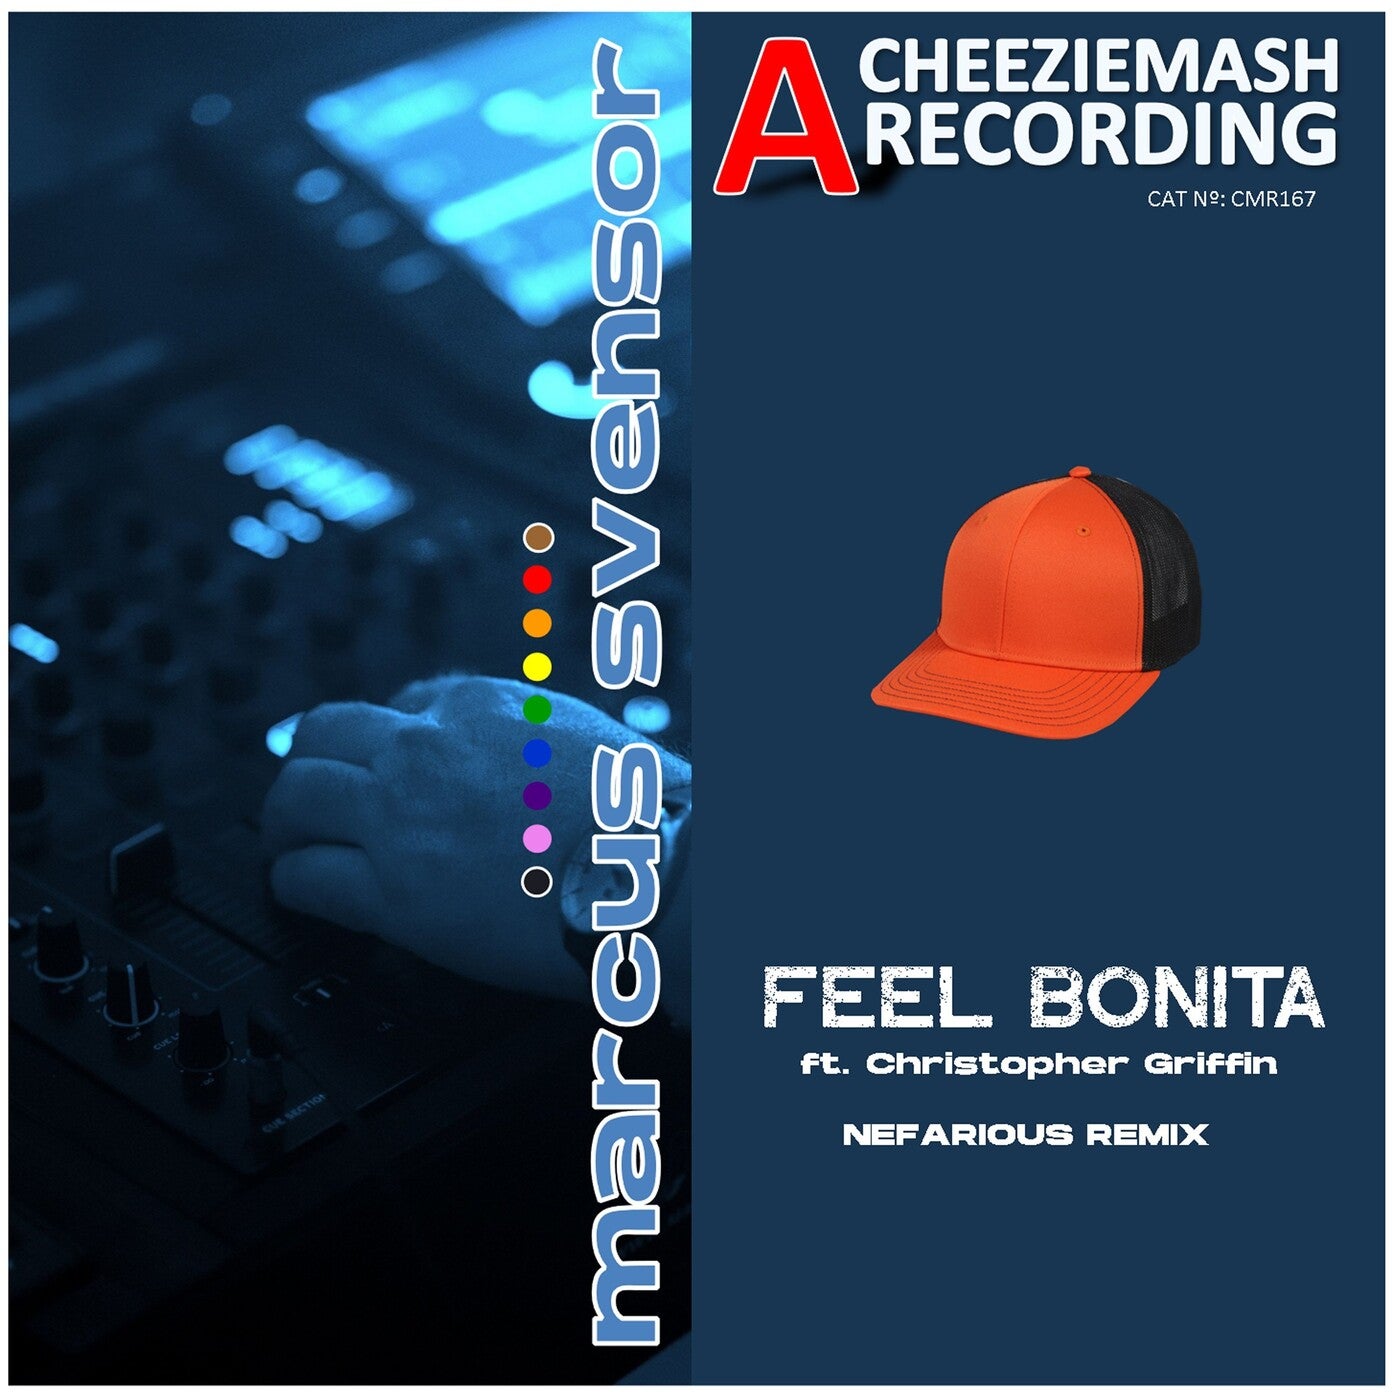 Feel Bonita (Nefarious Remix)